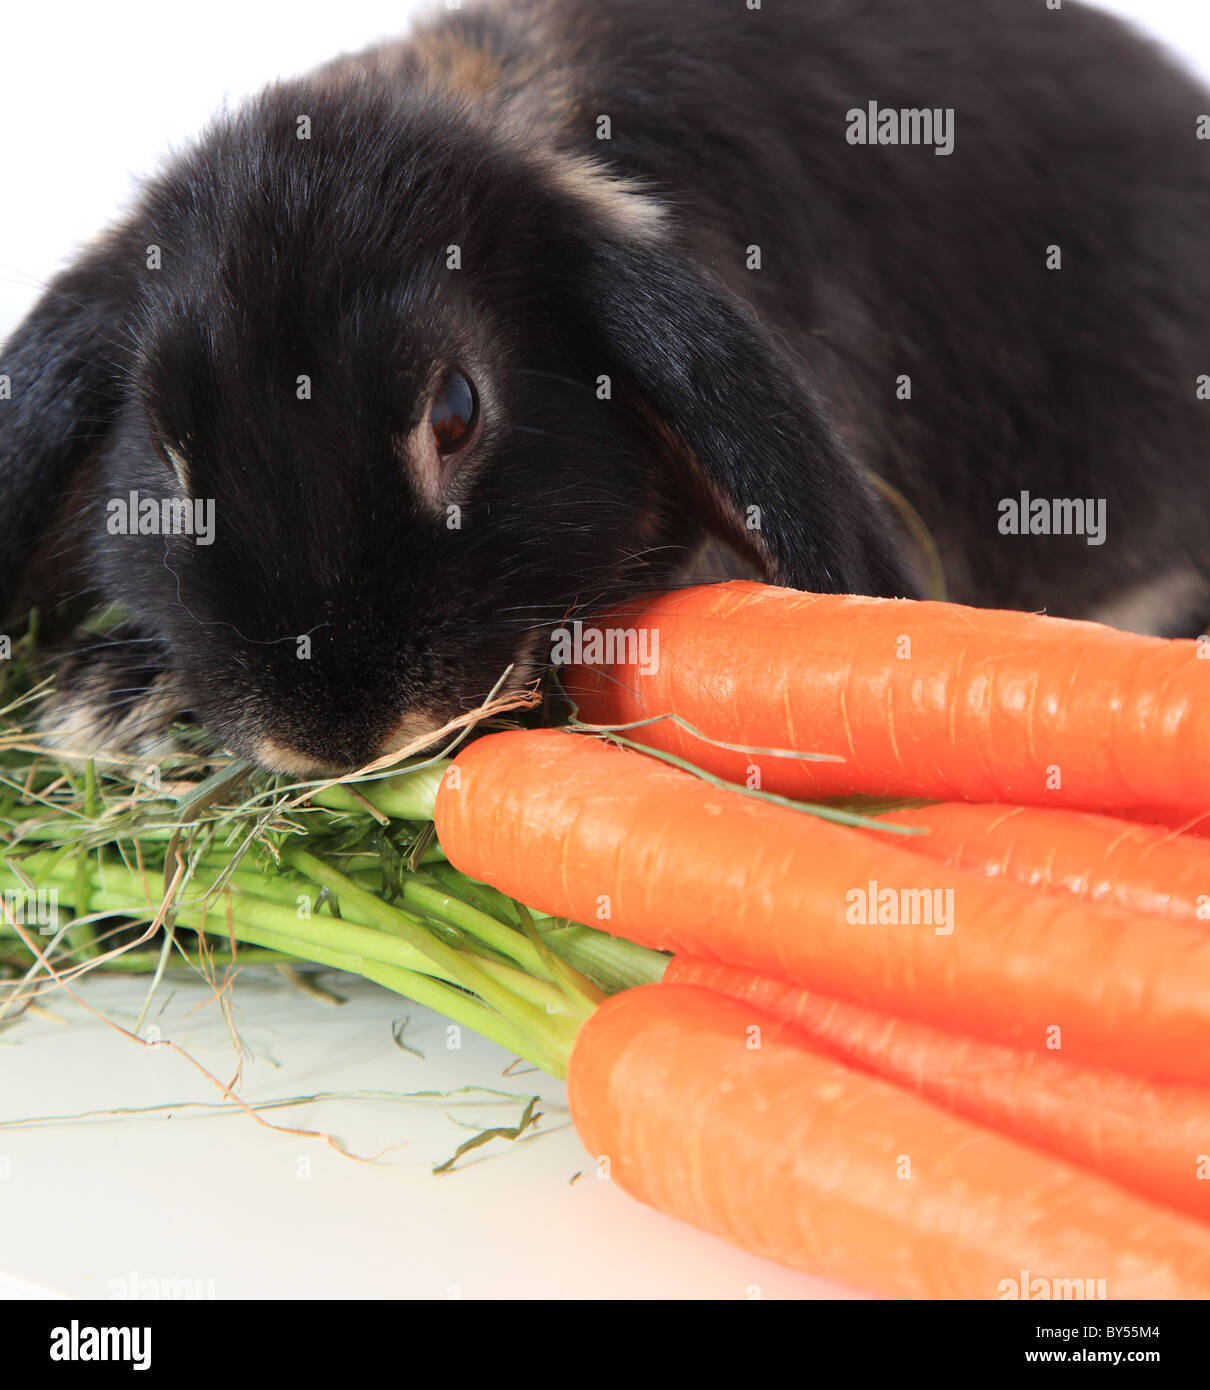 Niedliche kleine Hase frische Karotten essen. Alle auf weißem Hintergrund. Stockfoto